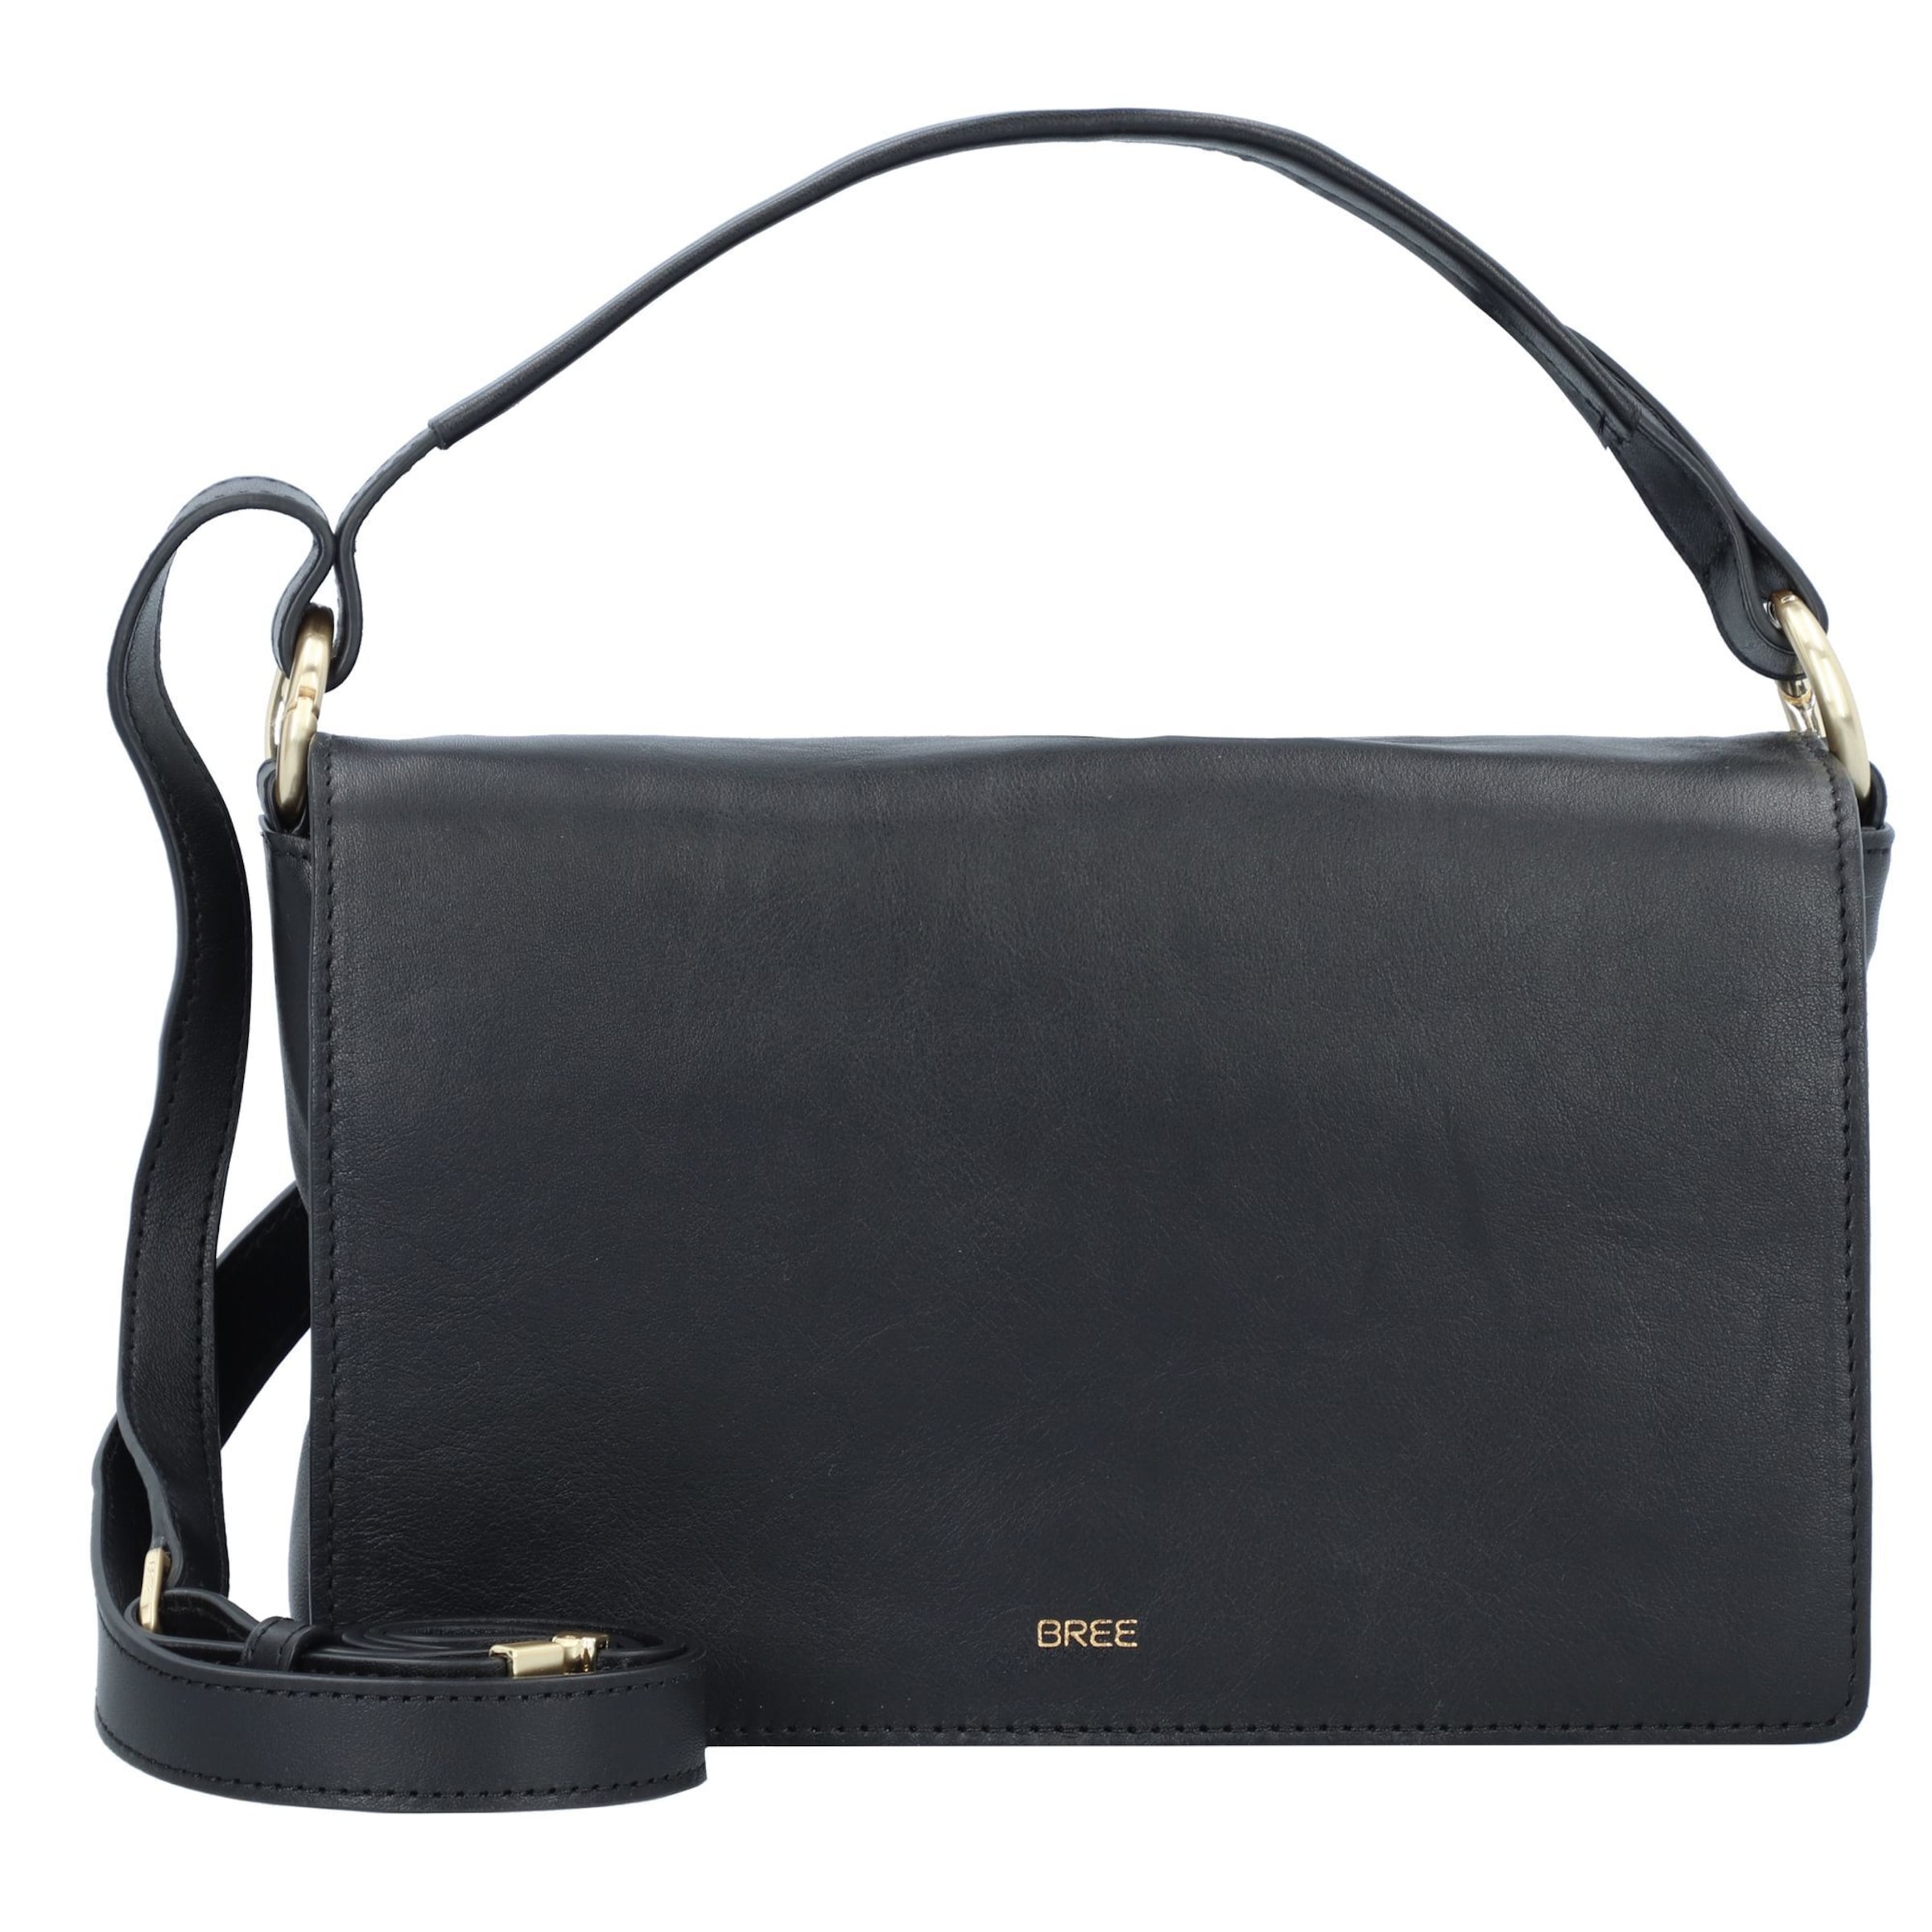 Buy GUCCI Bree Leather Shoulder Bag [323673KH1BG9783] Online - Best Price  GUCCI Bree Leather Shoulder Bag [323673KH1BG9783] - Justdial Shop Online.